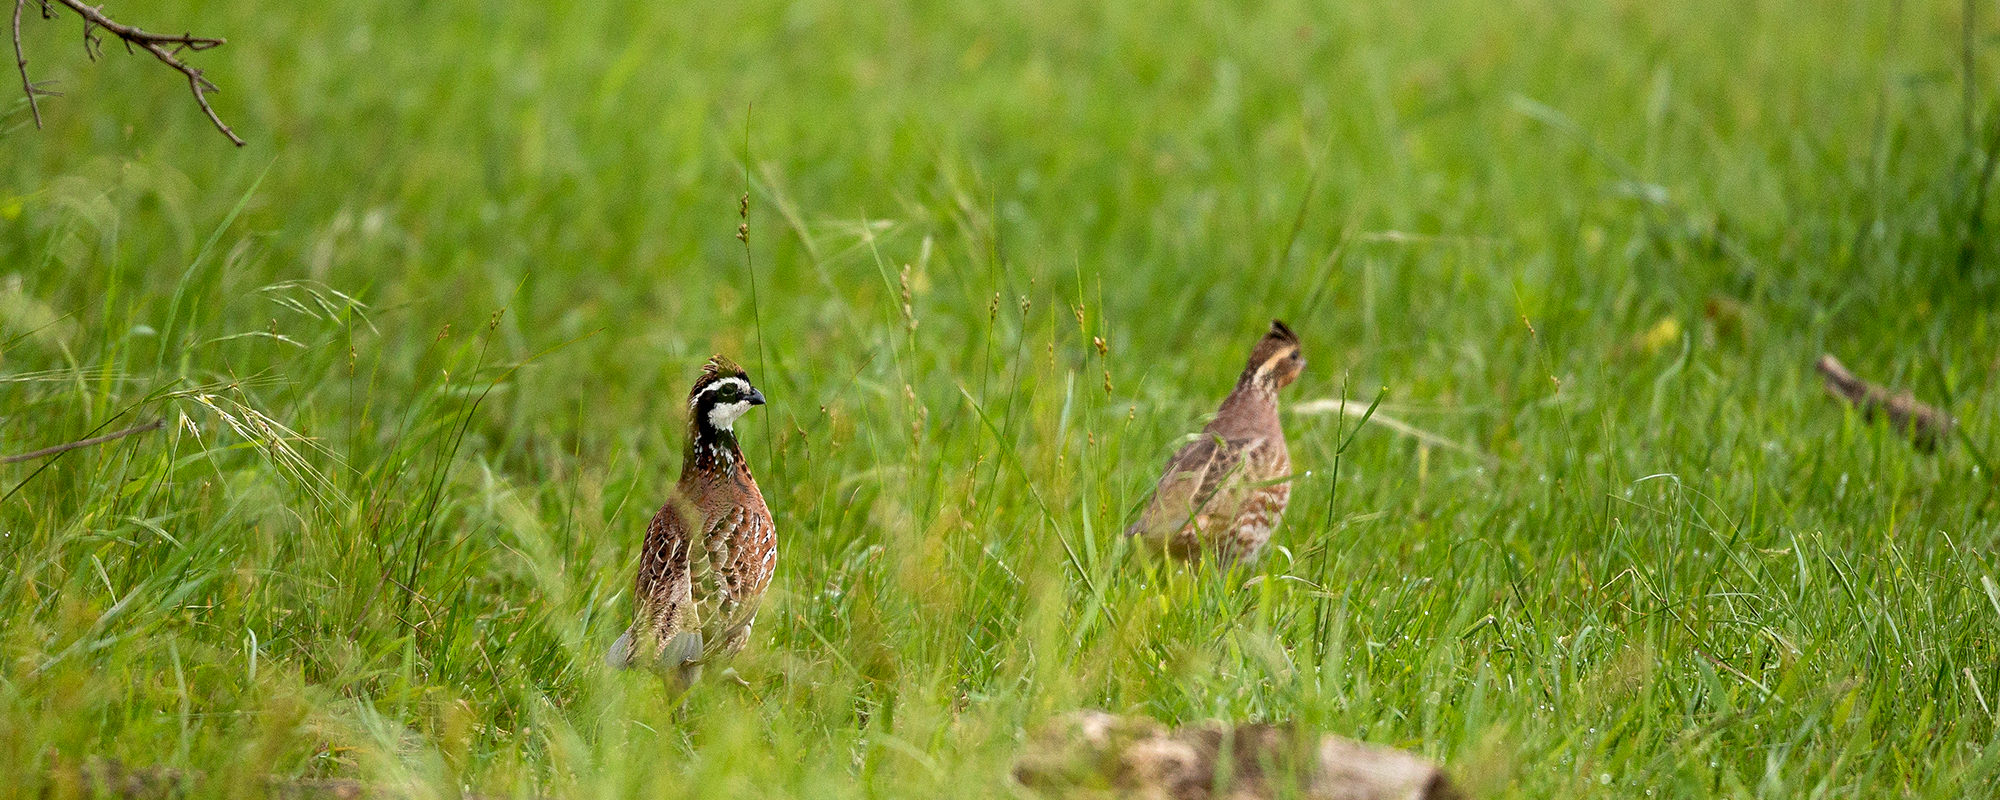 野生动物观察:健康草原丰盛地鸟信号